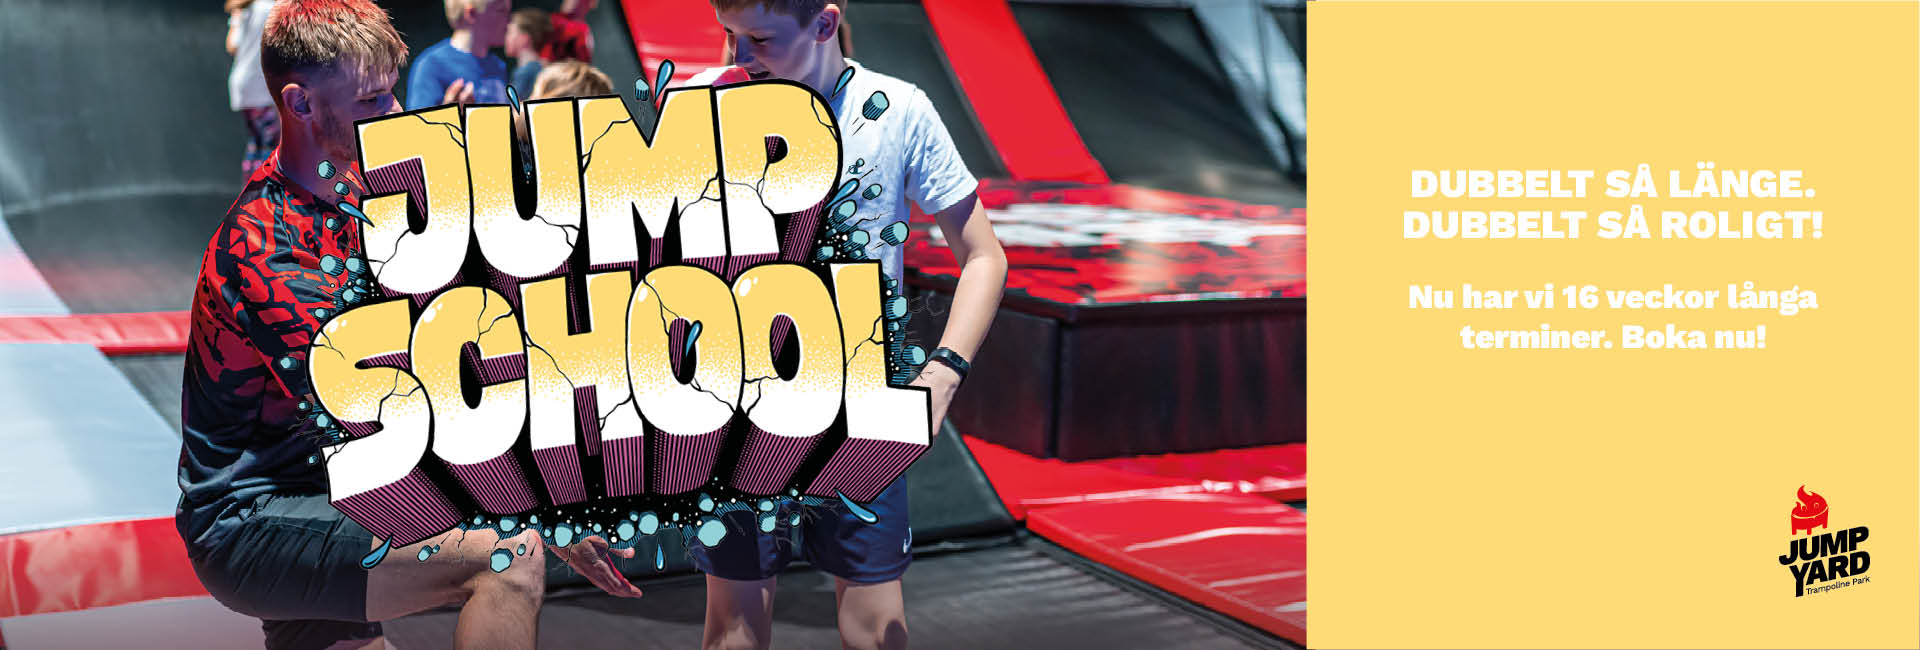 16 veckors JumpSchool termin - trampolinkurser Göteborg